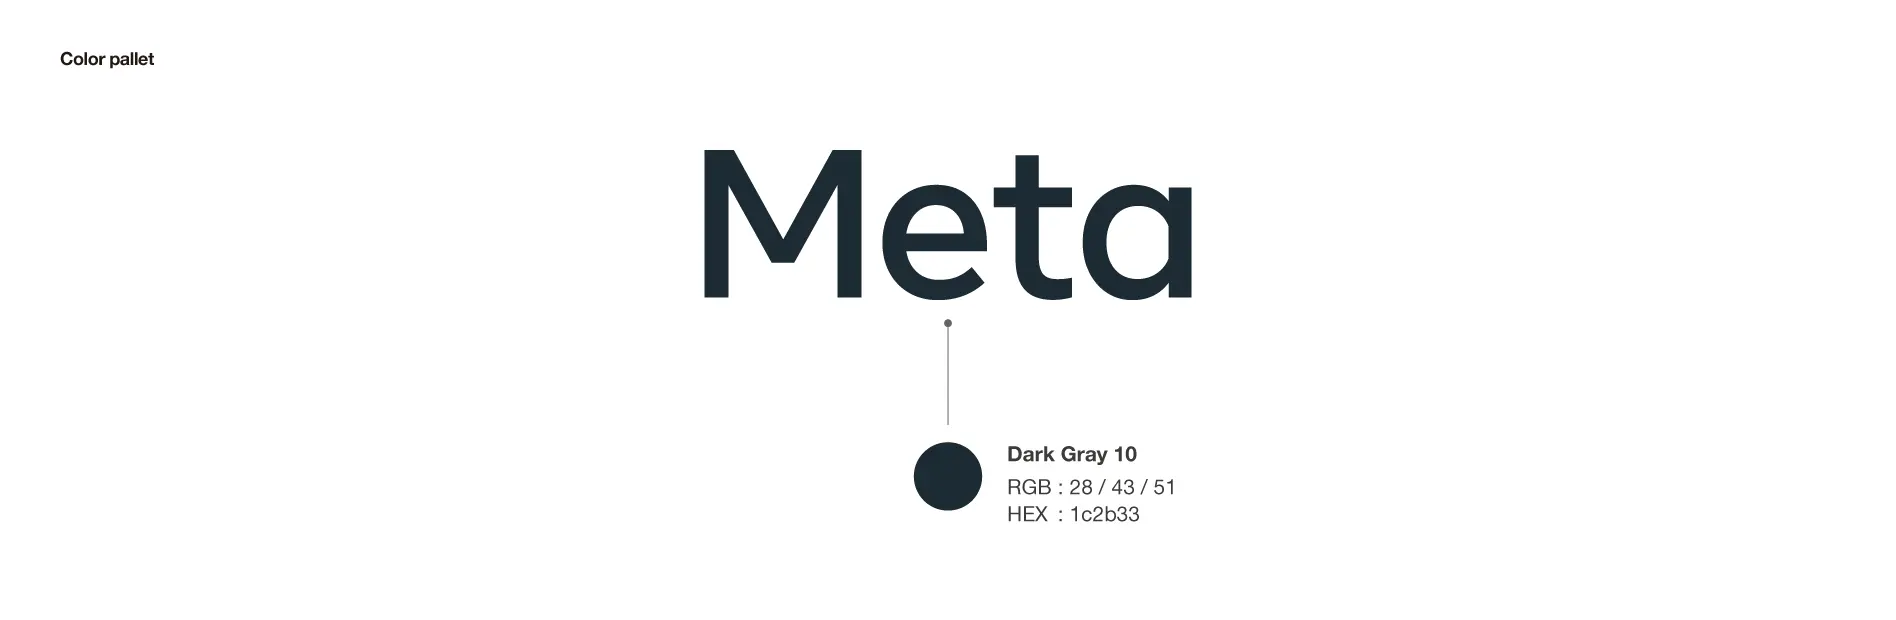 Meta（メタ）のロゴタイプデザイン刷新事例 グリッド分析とロゴタイプ比較 ロゴカラー規定